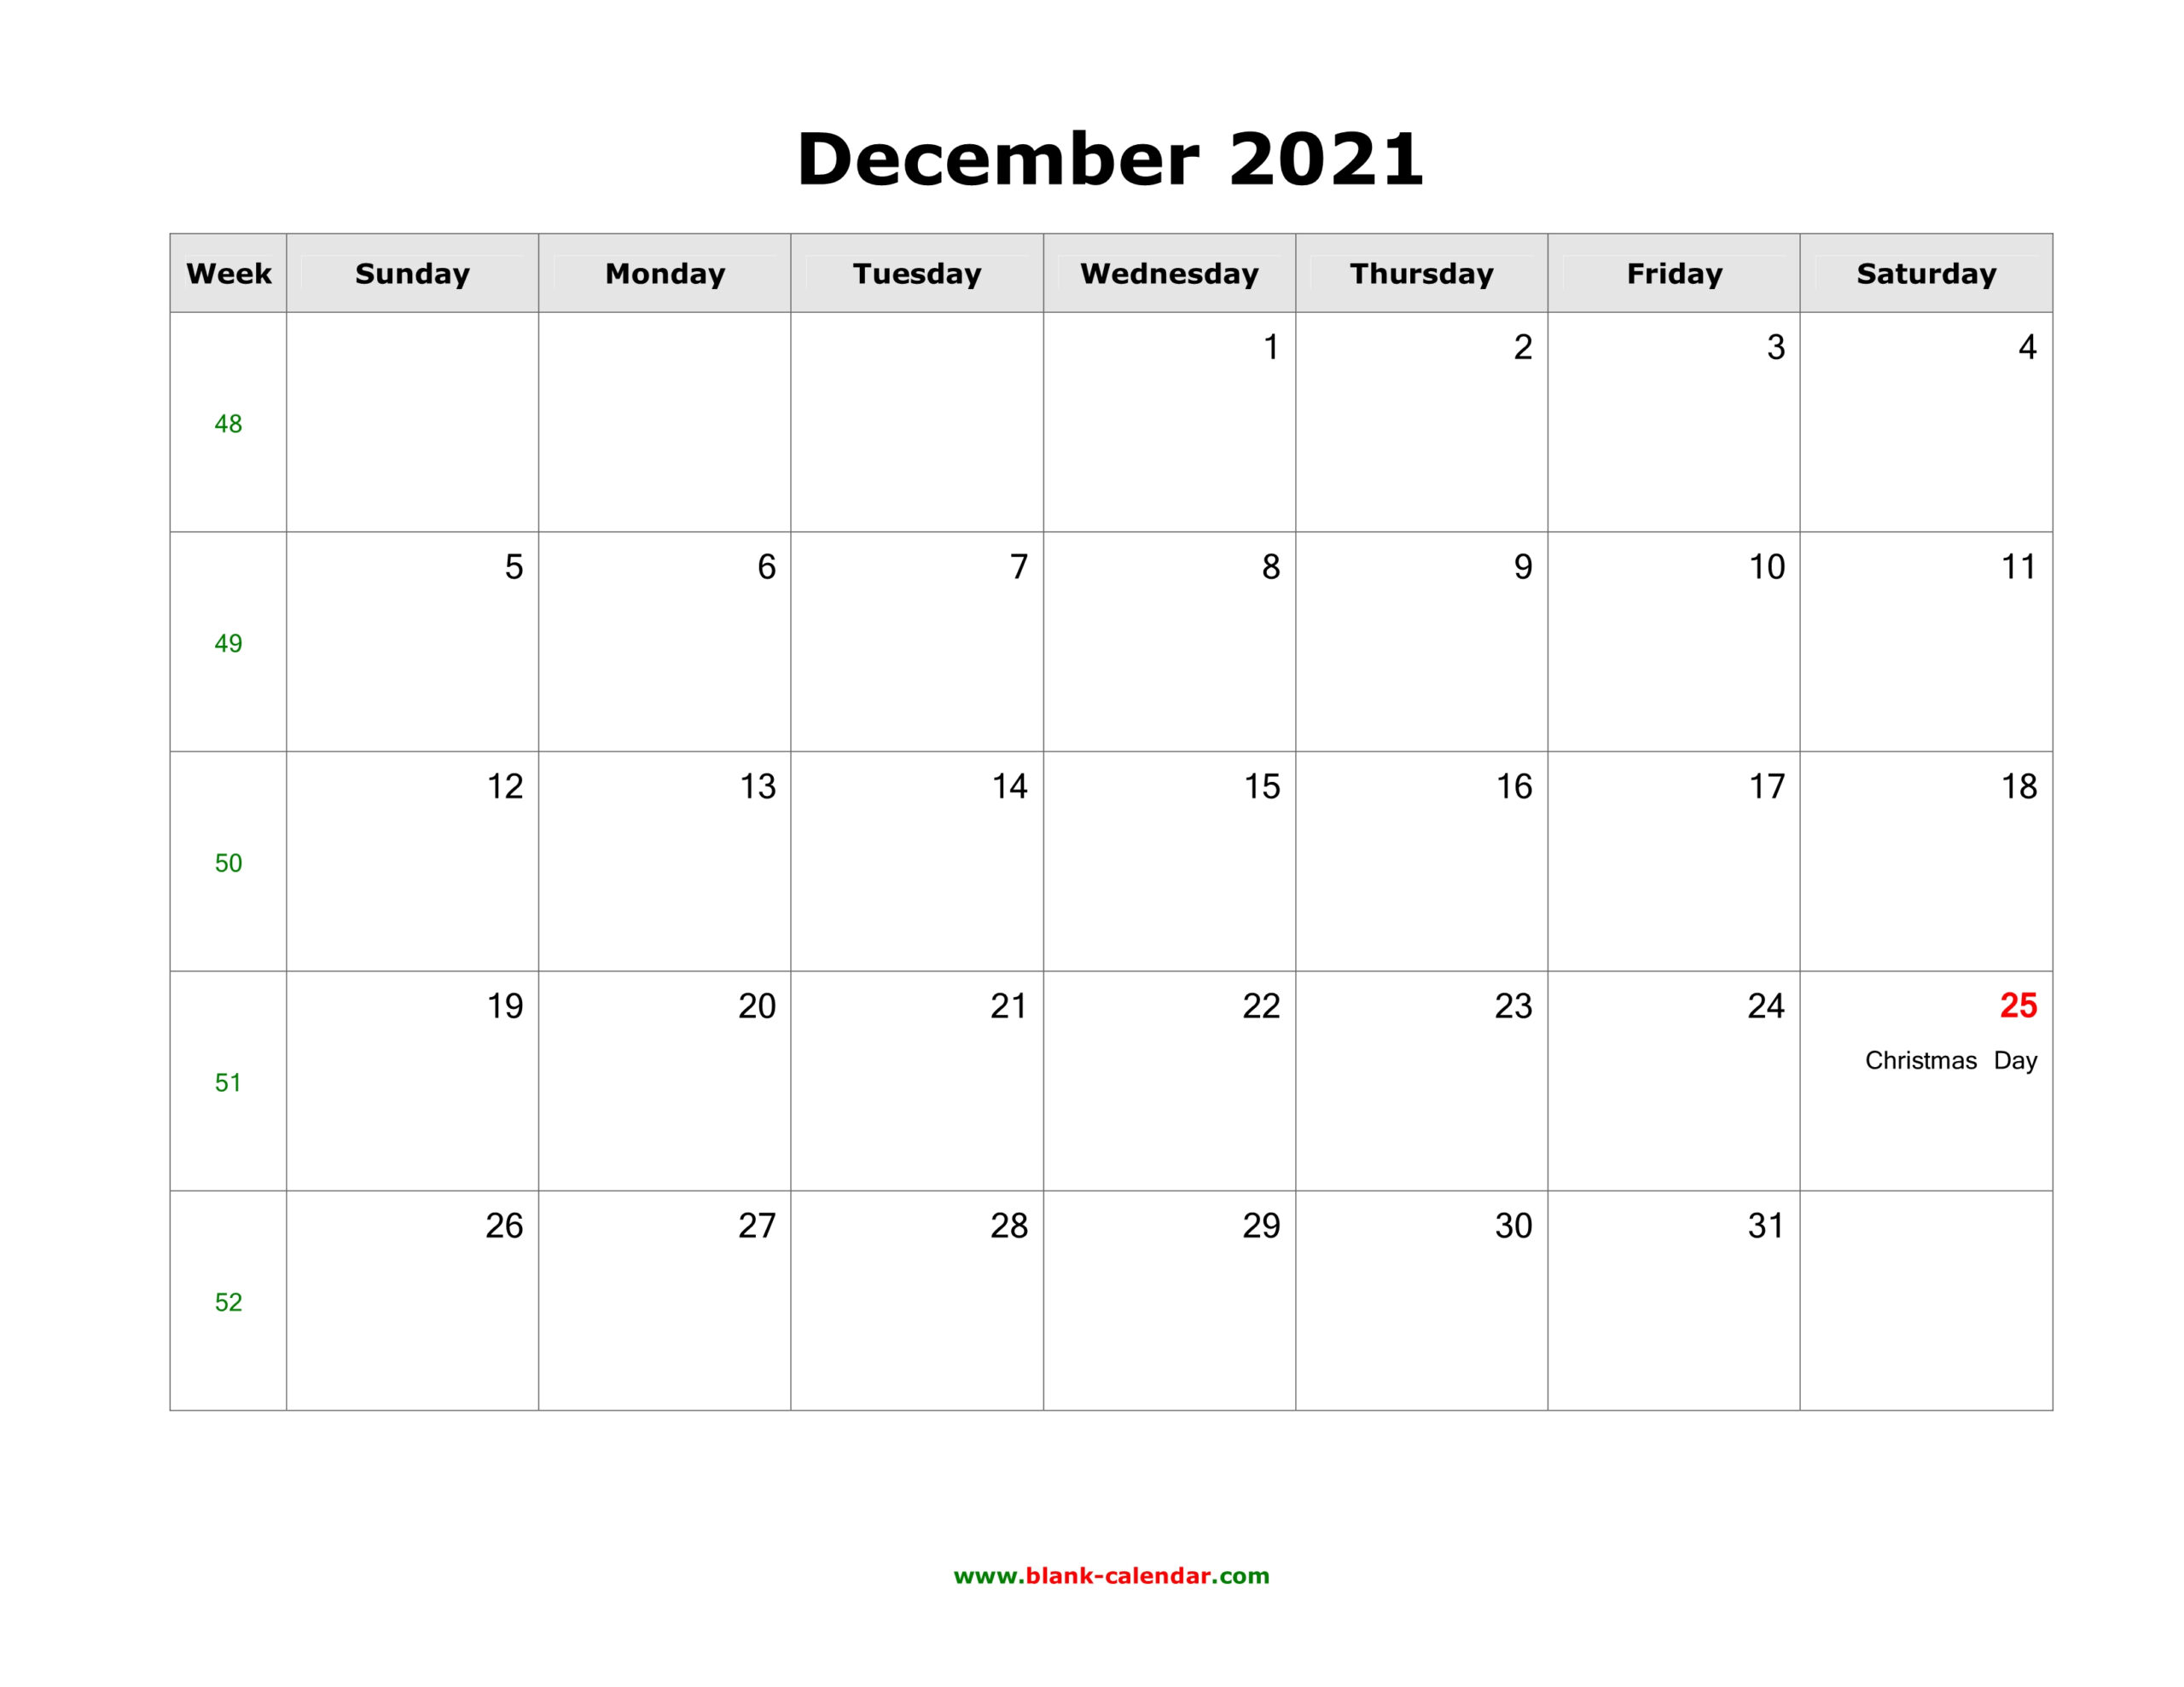 December 2021 Blank Calendar | Free Download Calendar